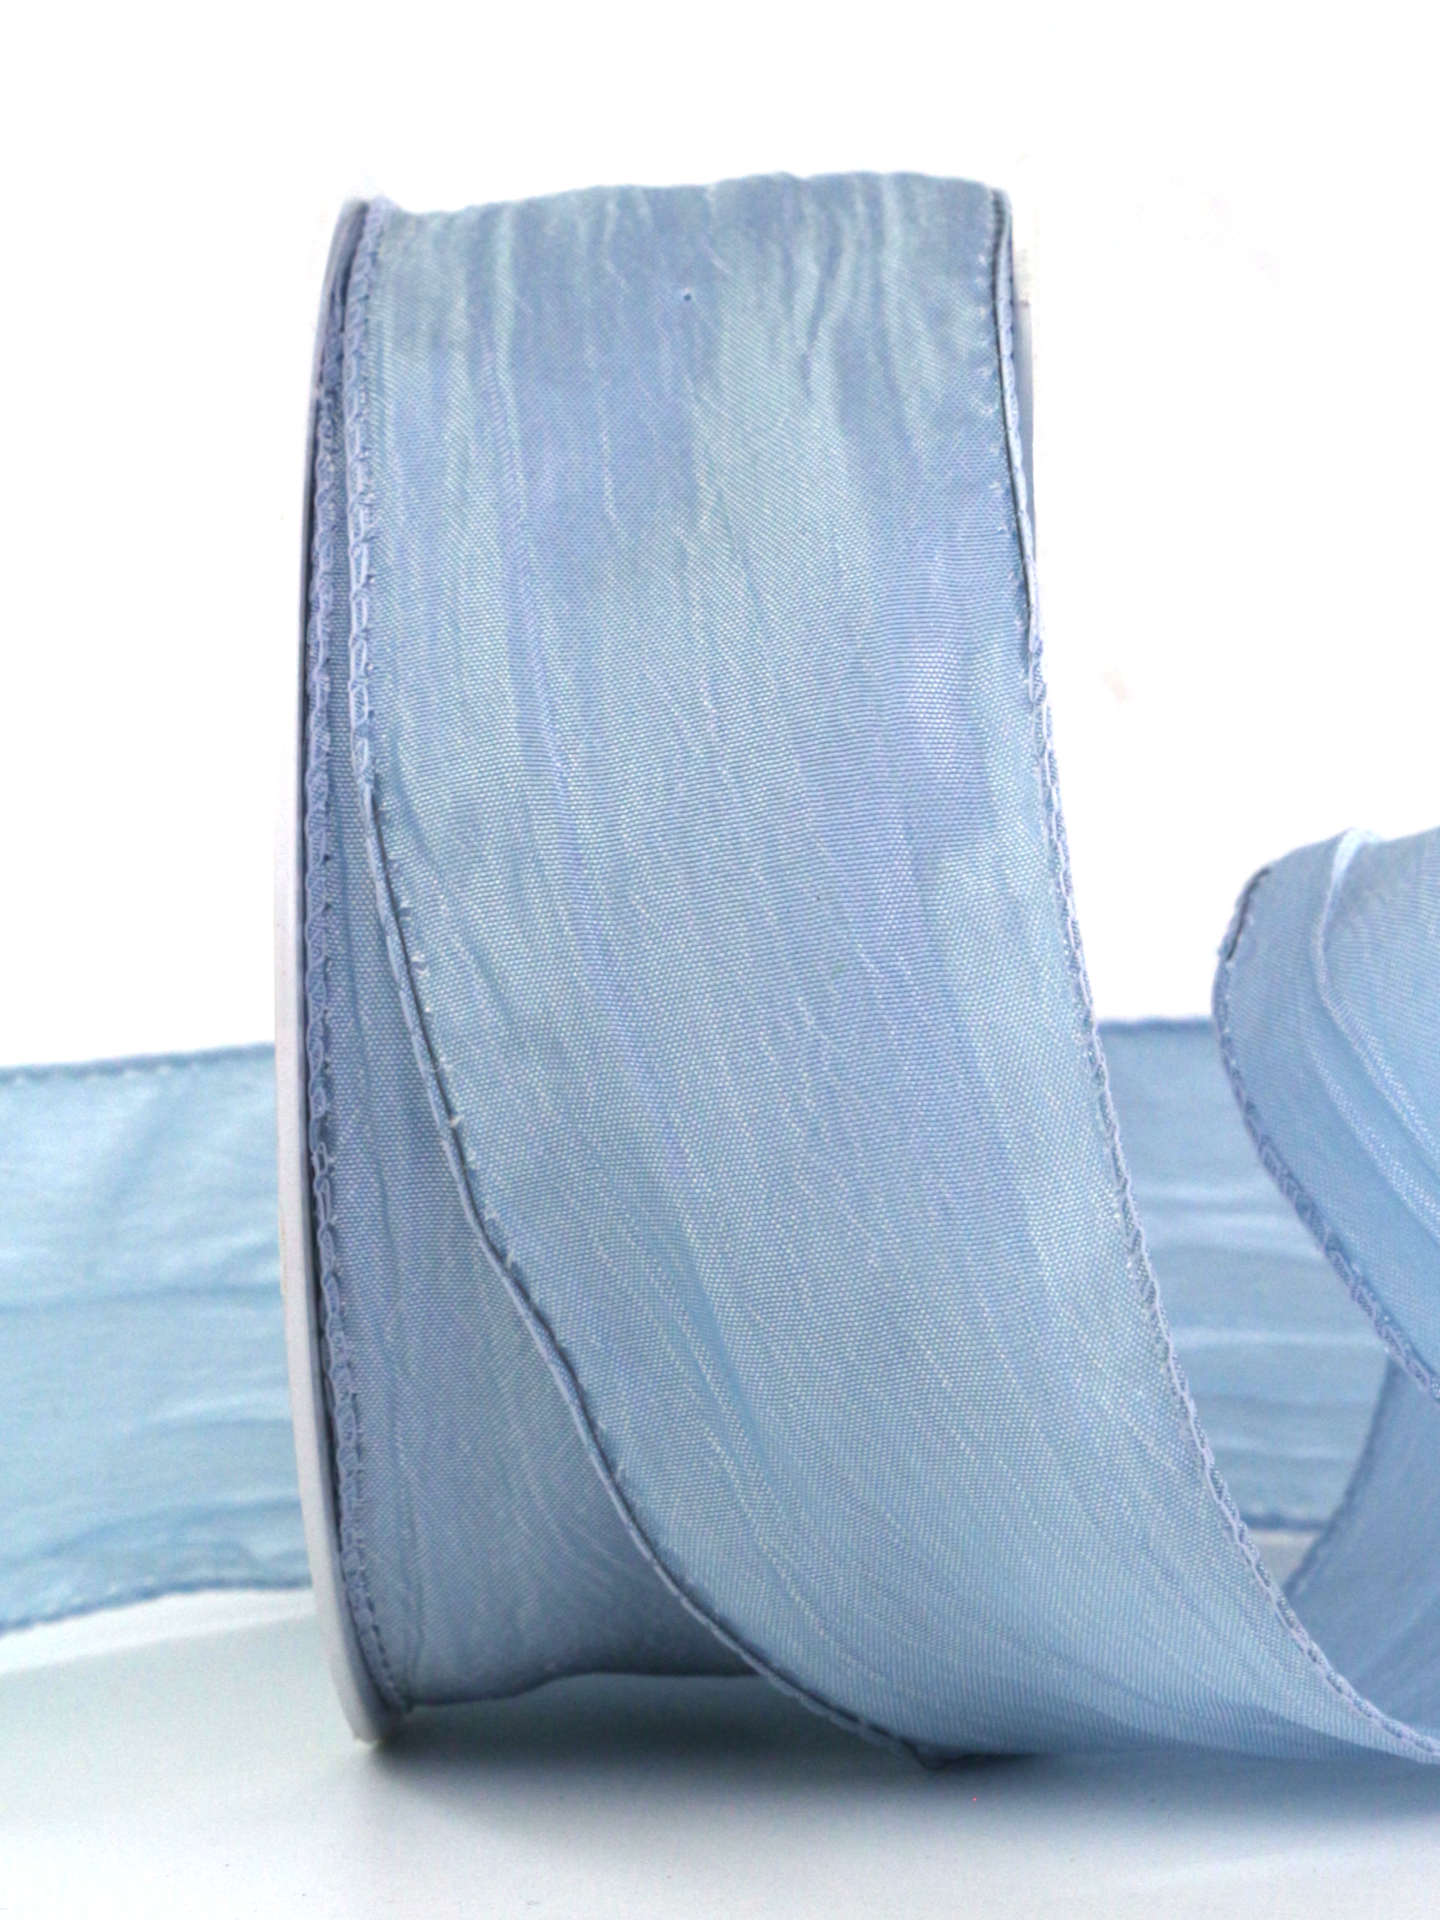 Crash-Stoffband, hellblau, 50 mm breit, 10 m Rolle - geschenkband, geschenkband-einfarbig, dekoband